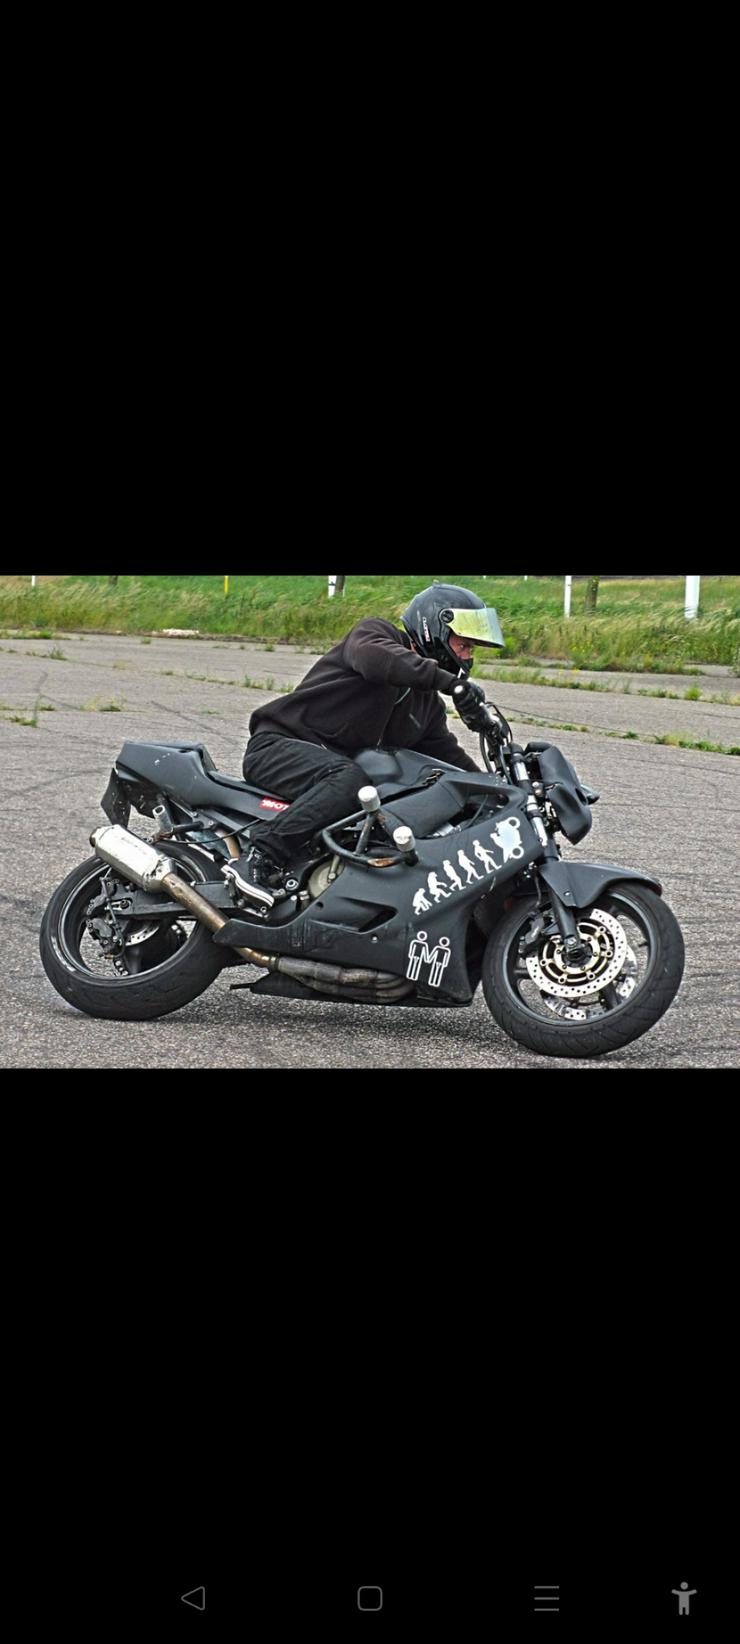 Bild 11: Stunt bike CBR 600 FS HONDA